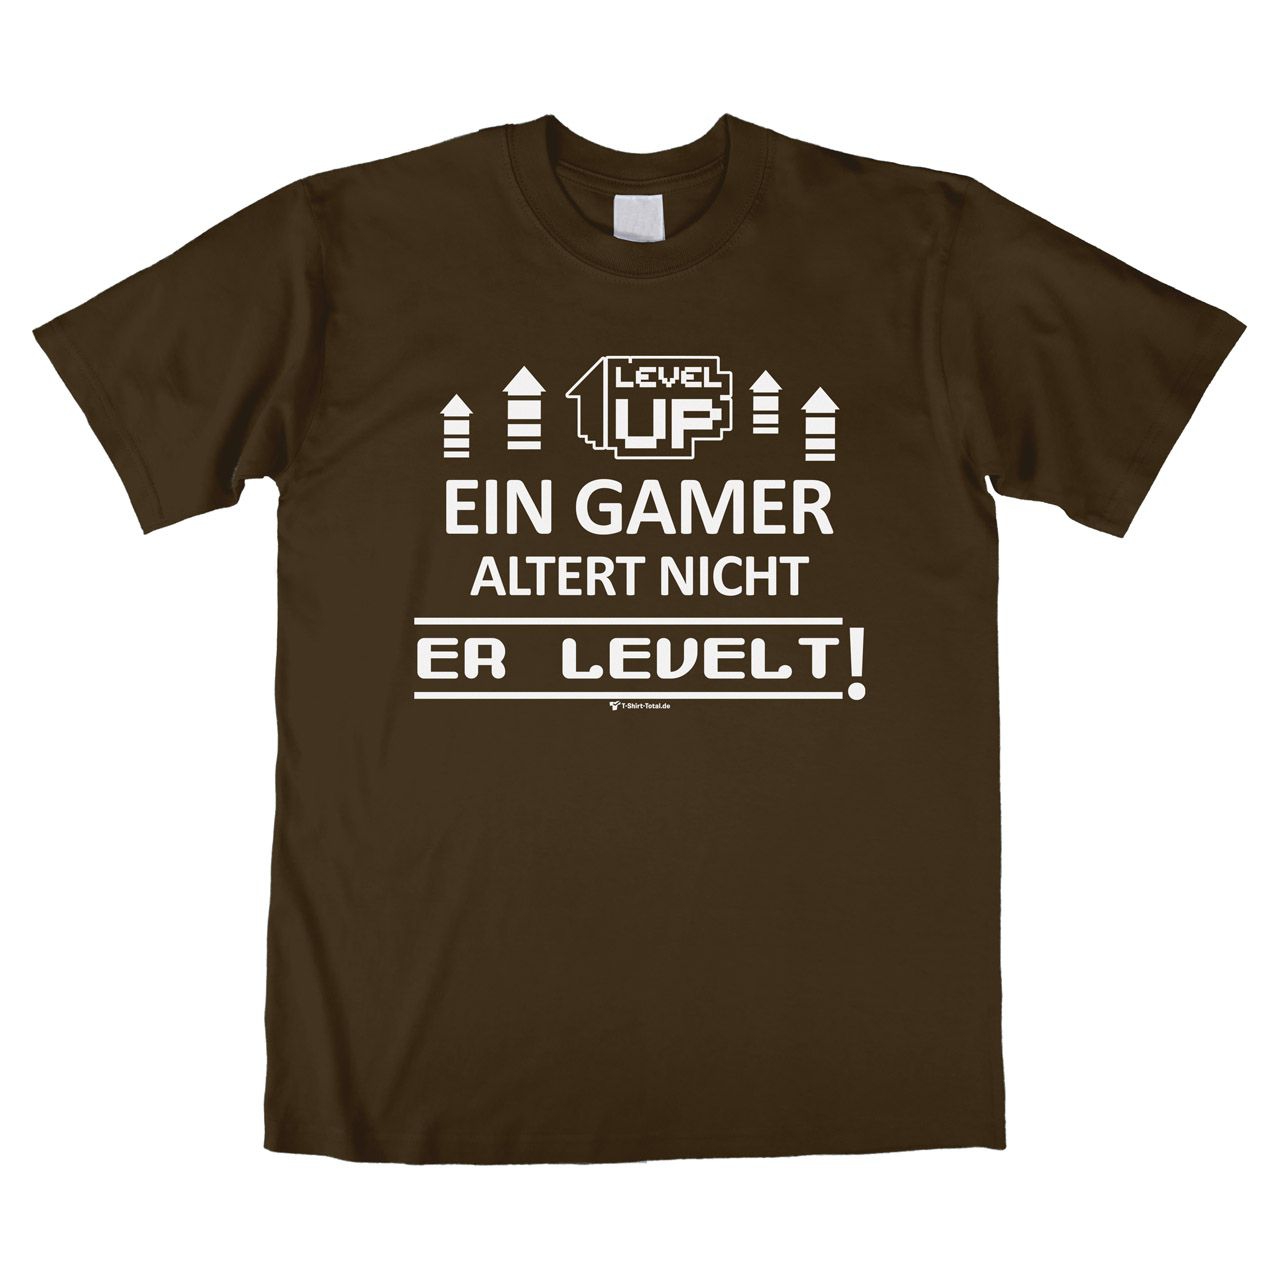 Ein Gamer levelt Unisex T-Shirt braun Medium